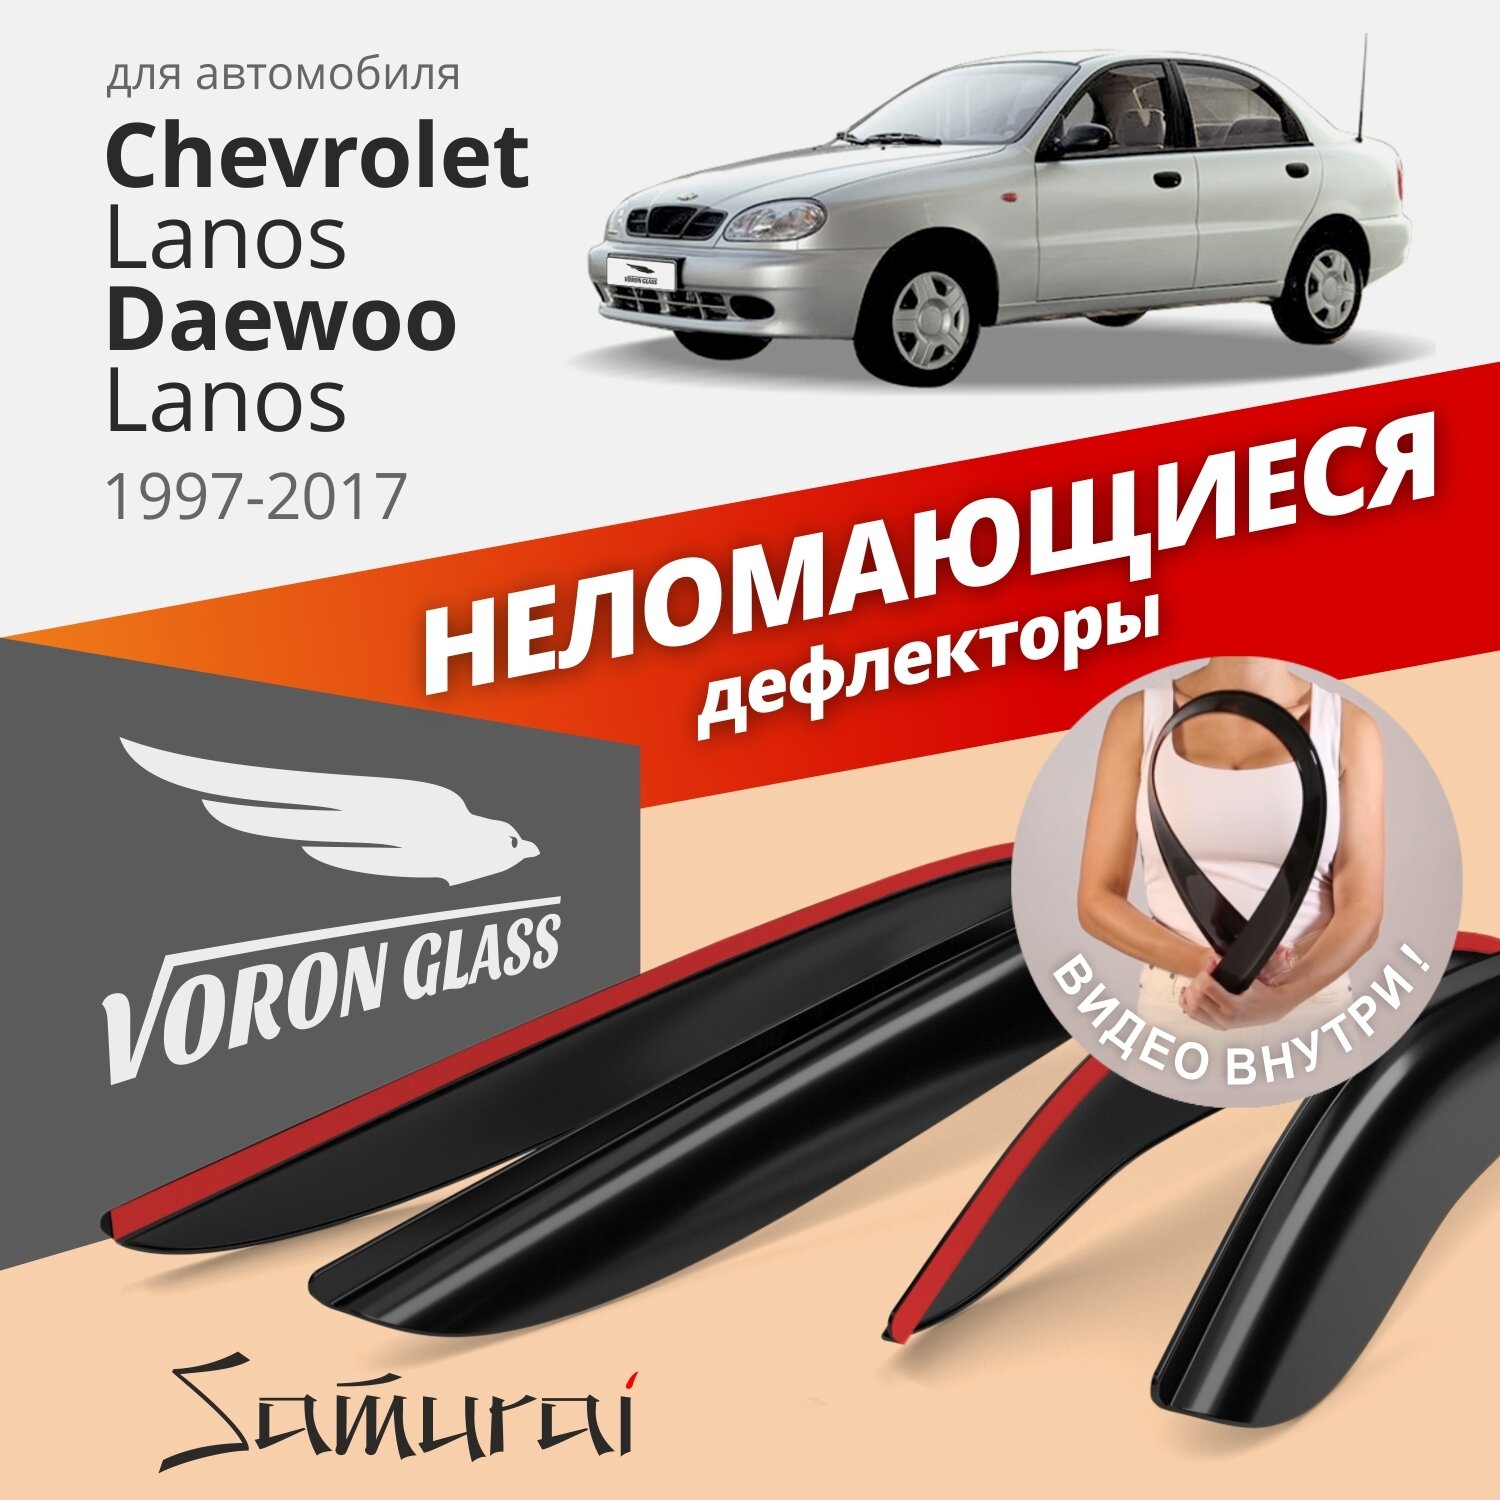 Дефлекторы окон неломающиеся Voron Glass серия Samurai для CHEVROLET LANOS 1997-2009 накладные 4 шт.